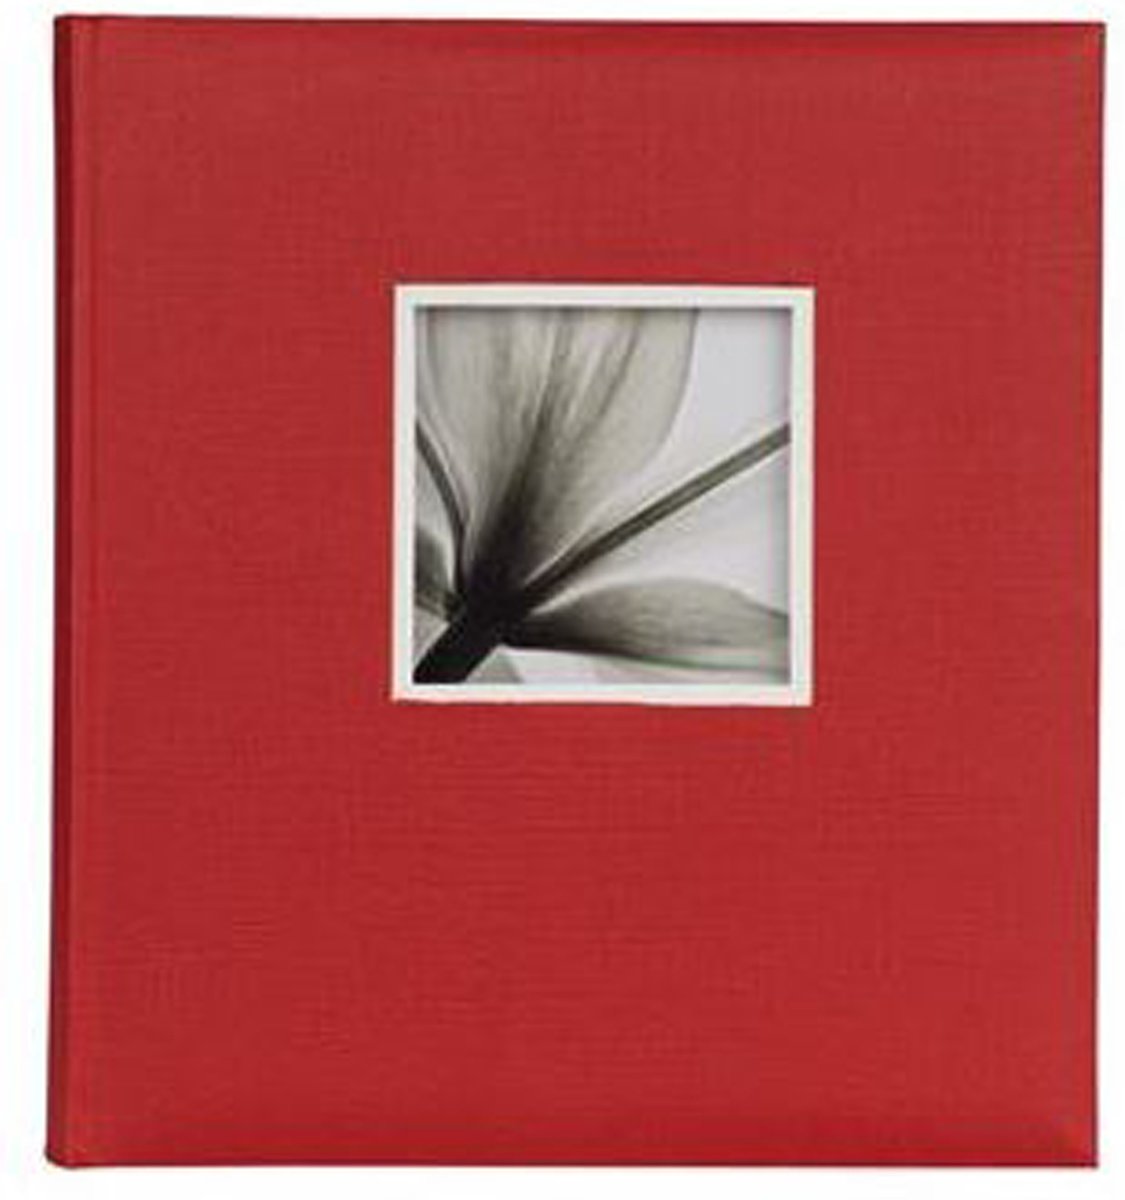 D�rr UniTex Jumbo Album 600 29x32 cm red